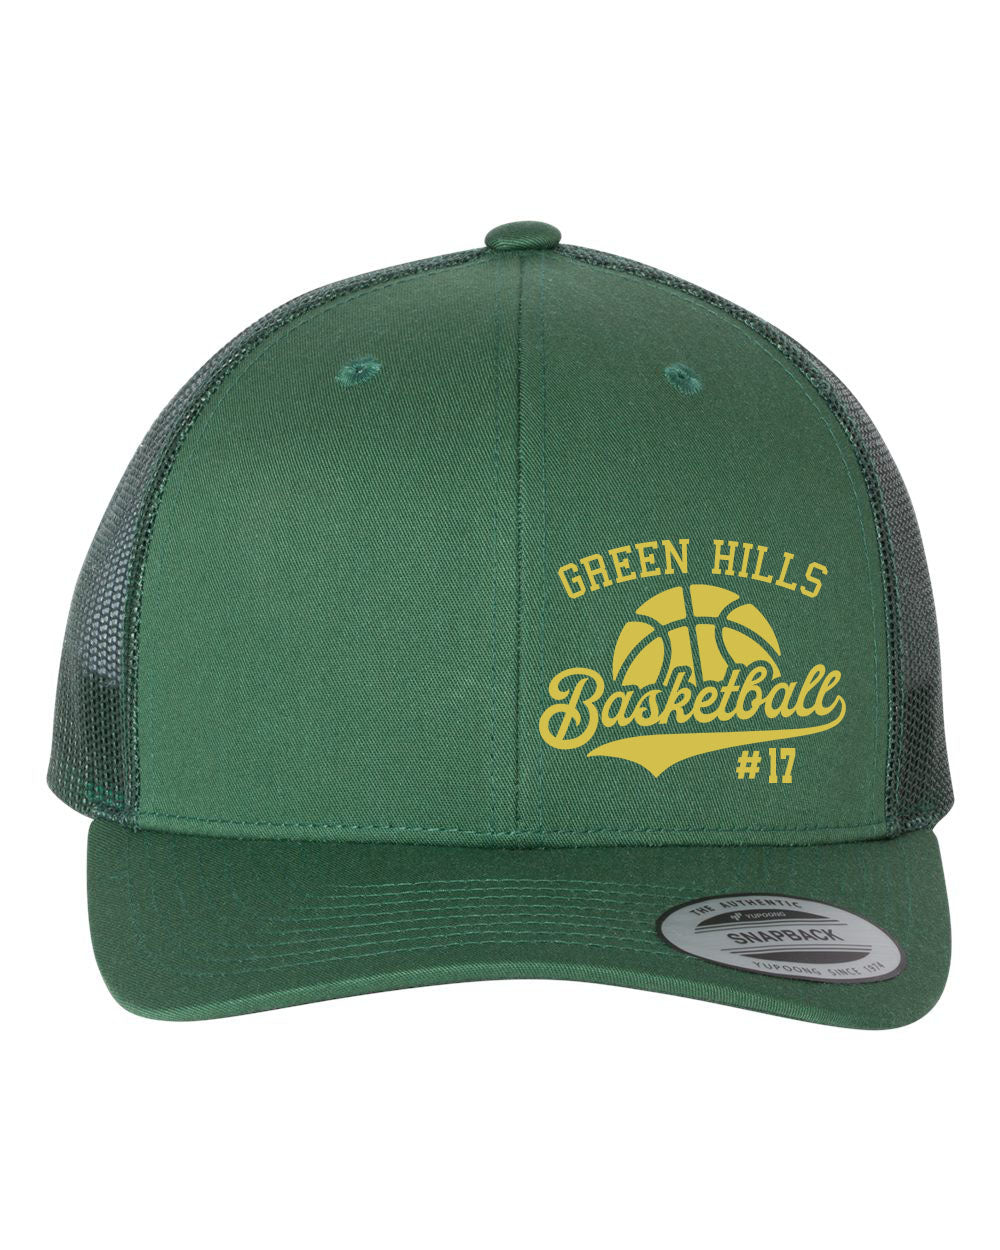 Green Hills Basketball Design 6 Trucker Hat